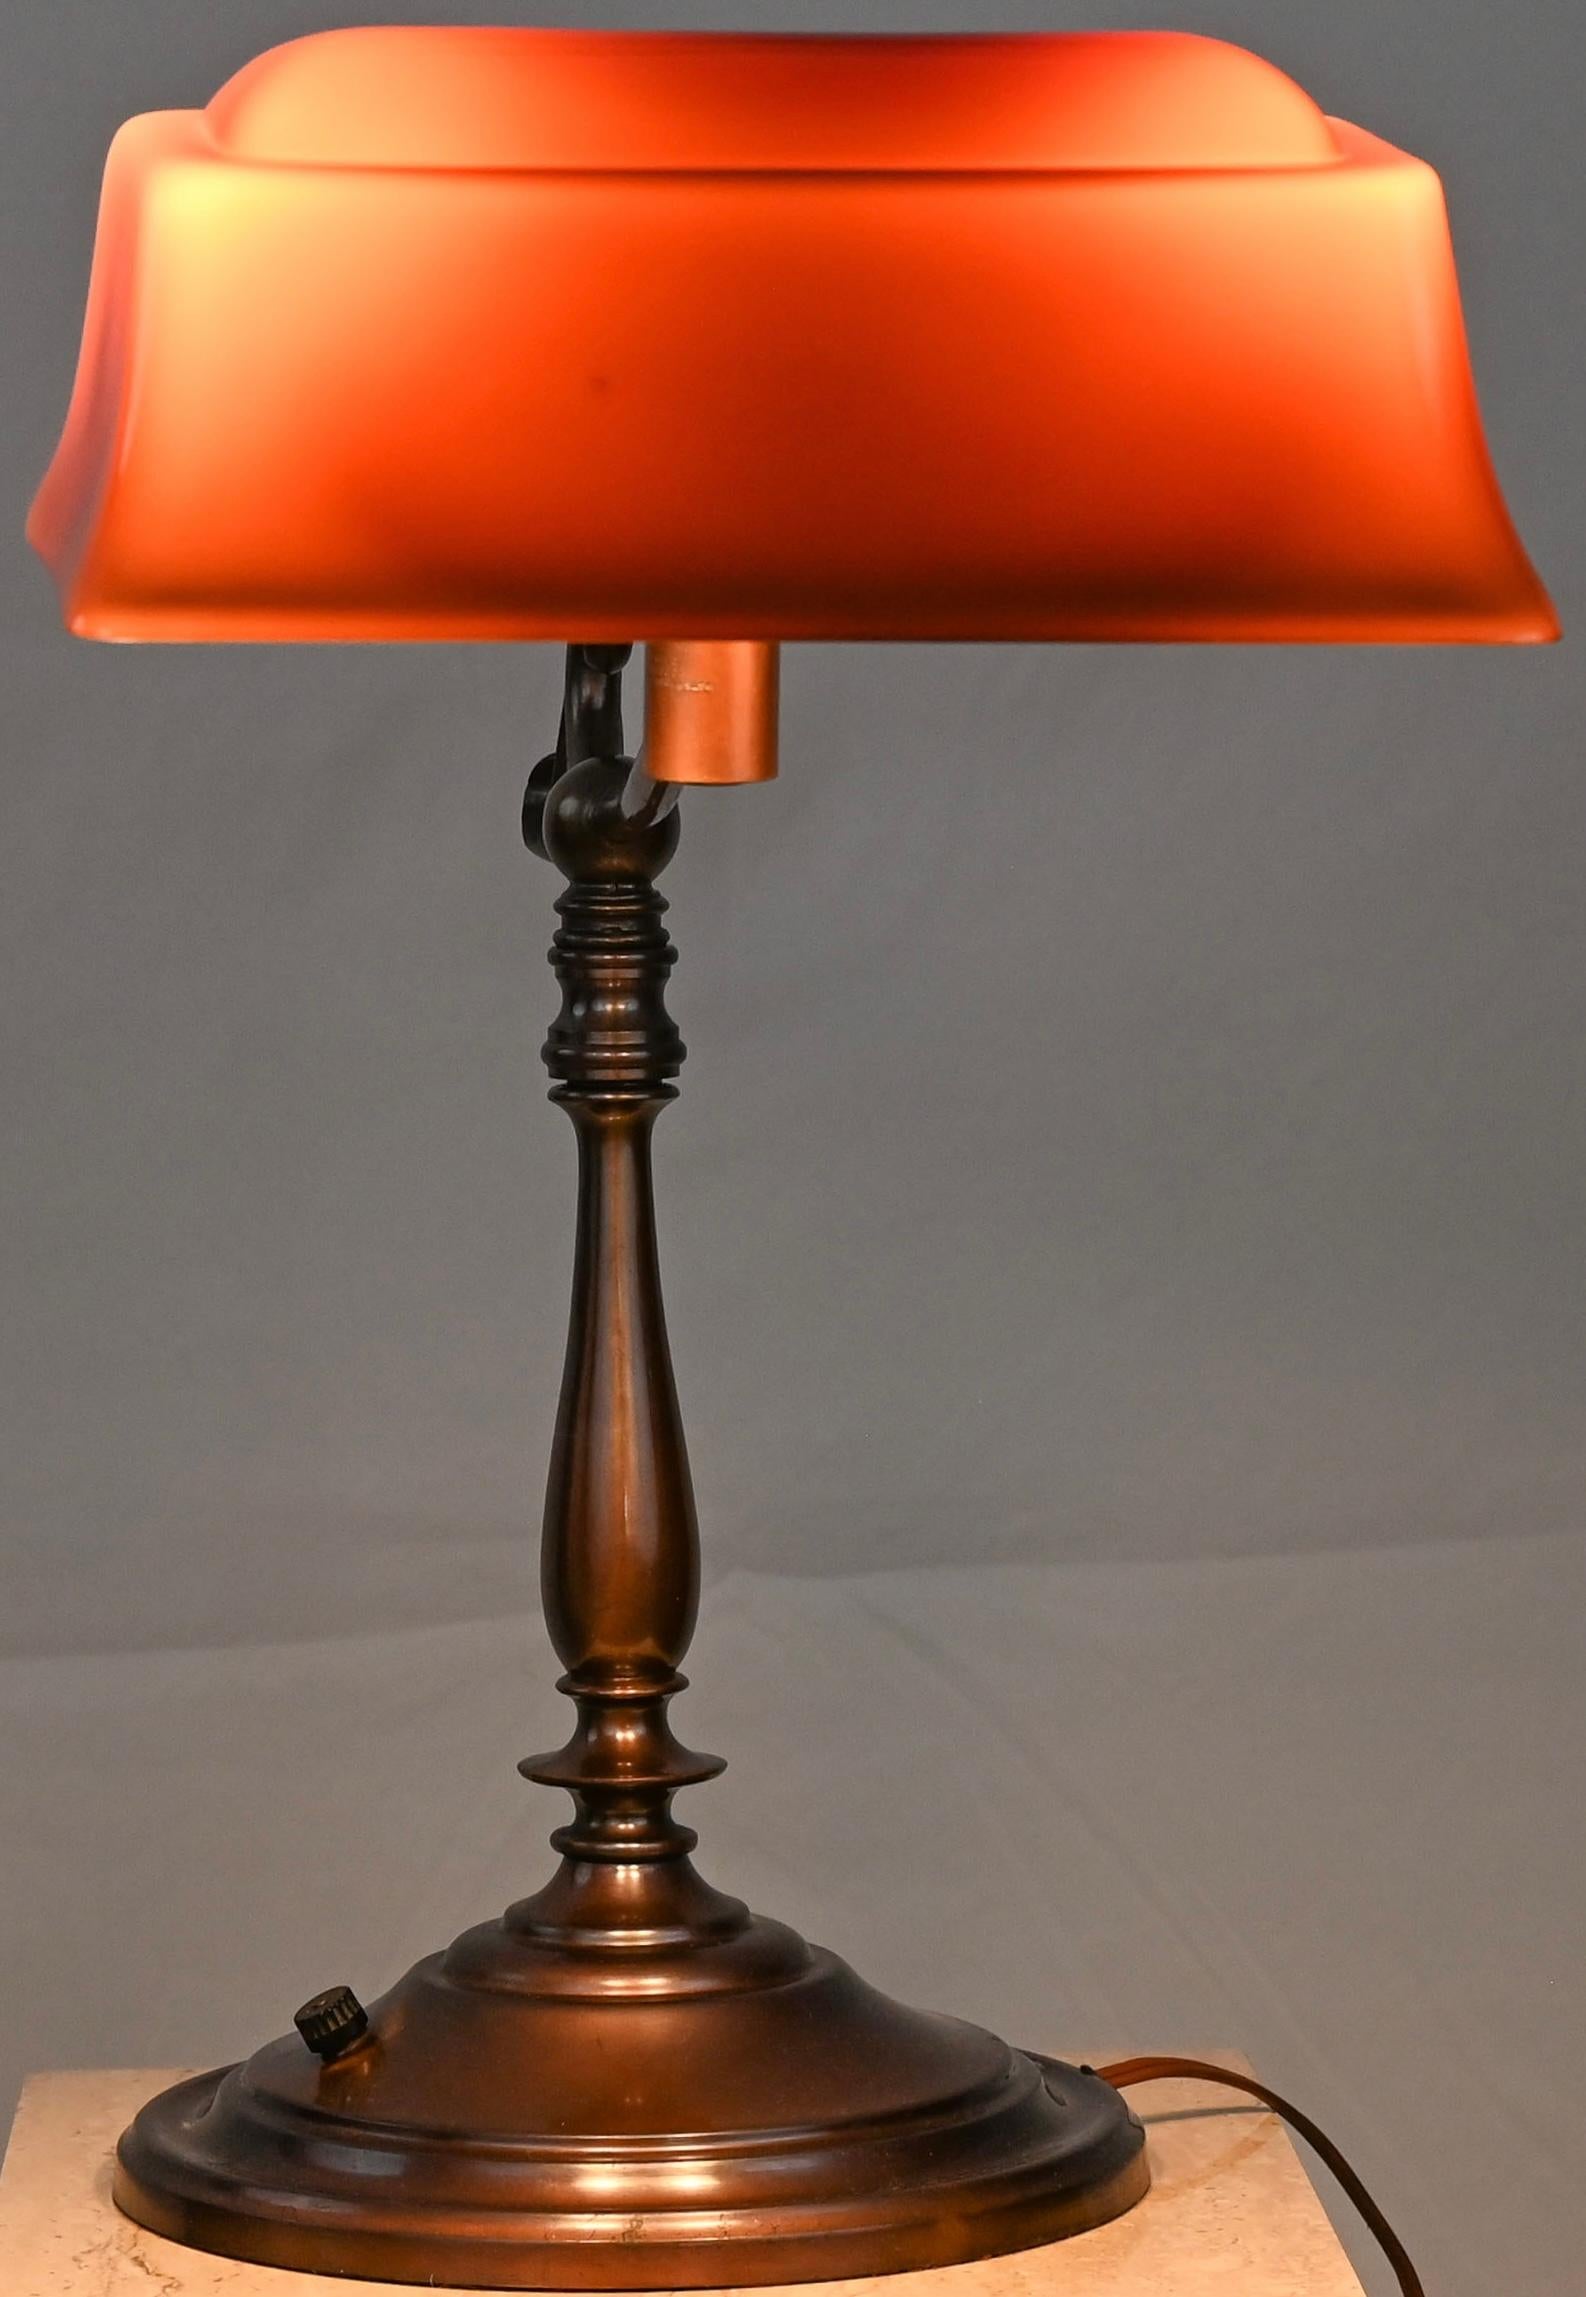 Une superbe lampe de table ou lampe de bureau Emeralie de style Art Nouveau américain, avec son abat-jour d'origine. Cette superbe lampe de banquier / Emeralite avec abat-jour en verre opalin rouge / orange et base en laiton a été fabriquée vers